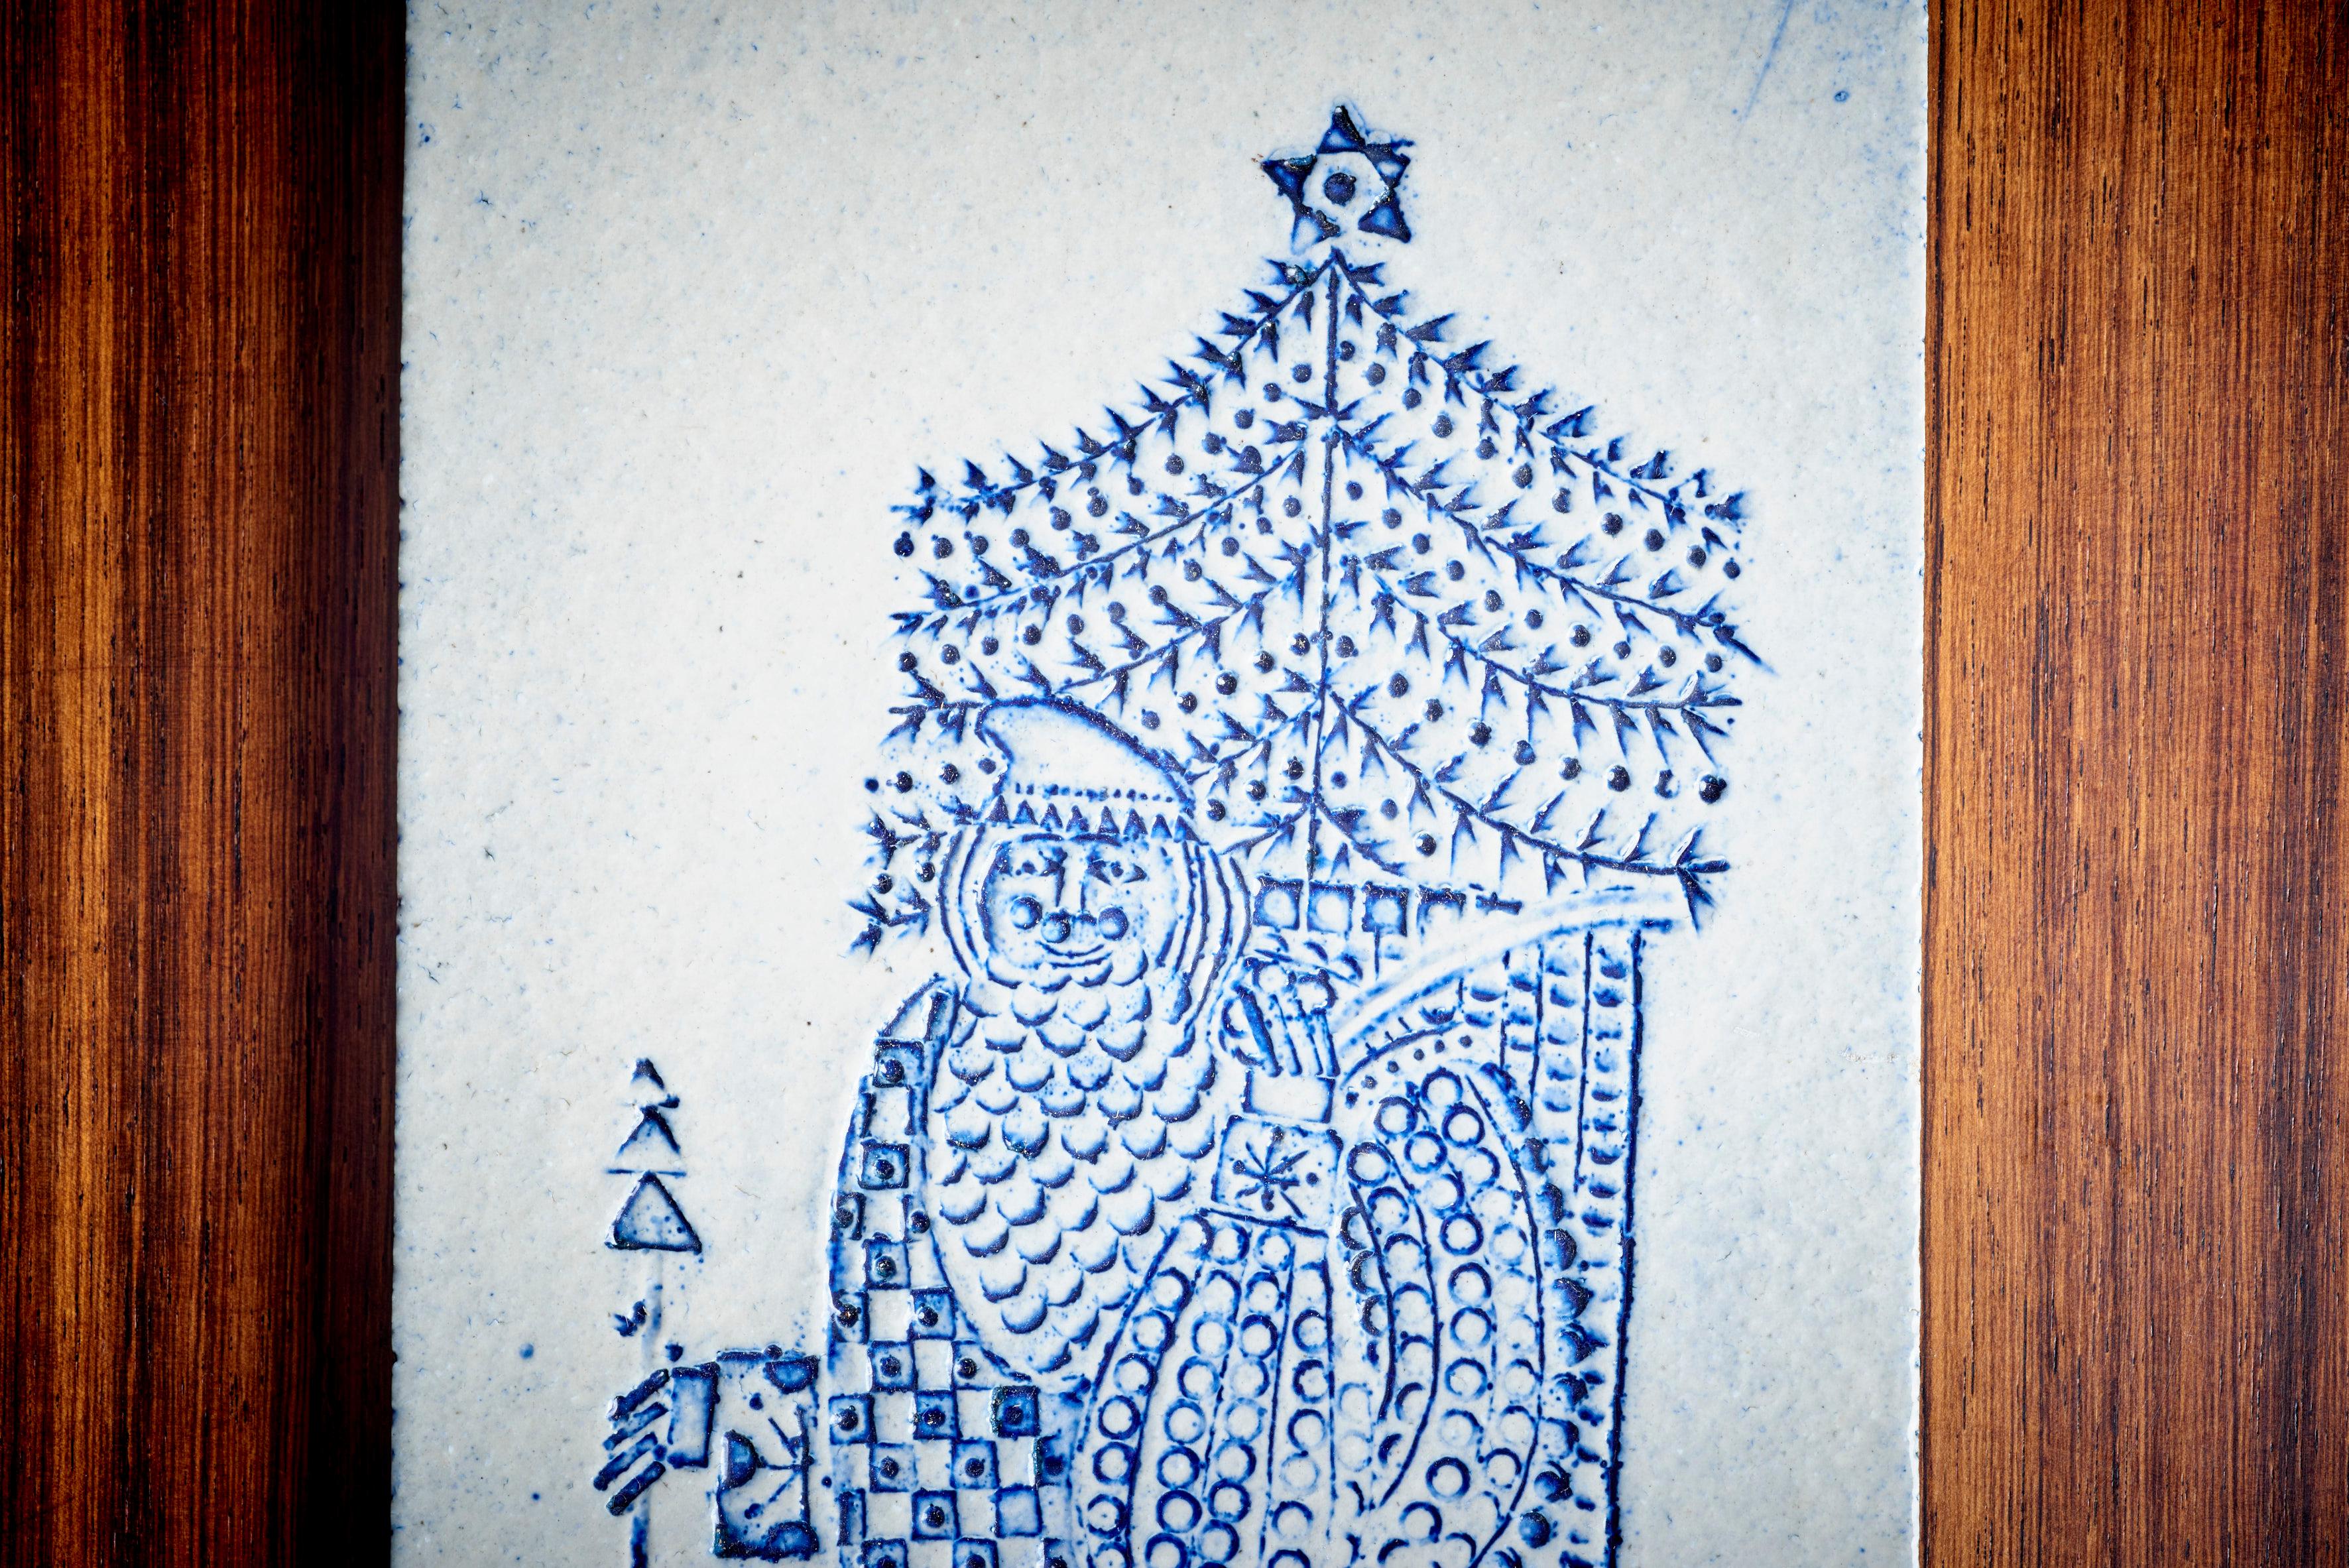 Roger Capron Set of 5 Blue Ceramic Tiles, France - 1950s, Labeled 8